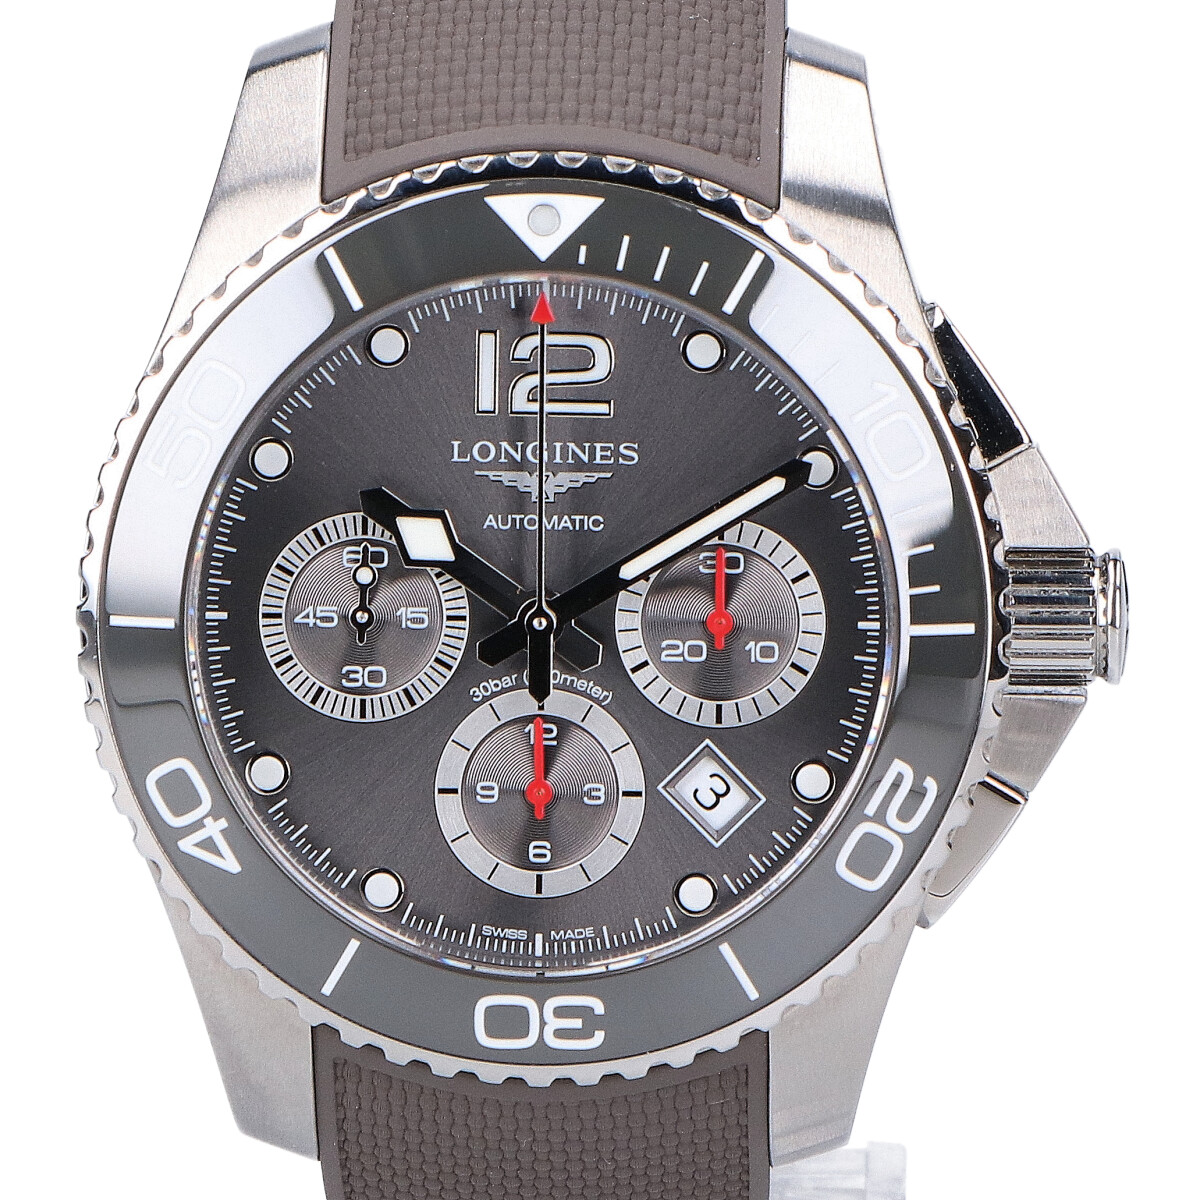 ロンジンのL38834769 ハイドロコンクエスト 自動巻き腕時計の買取実績です。